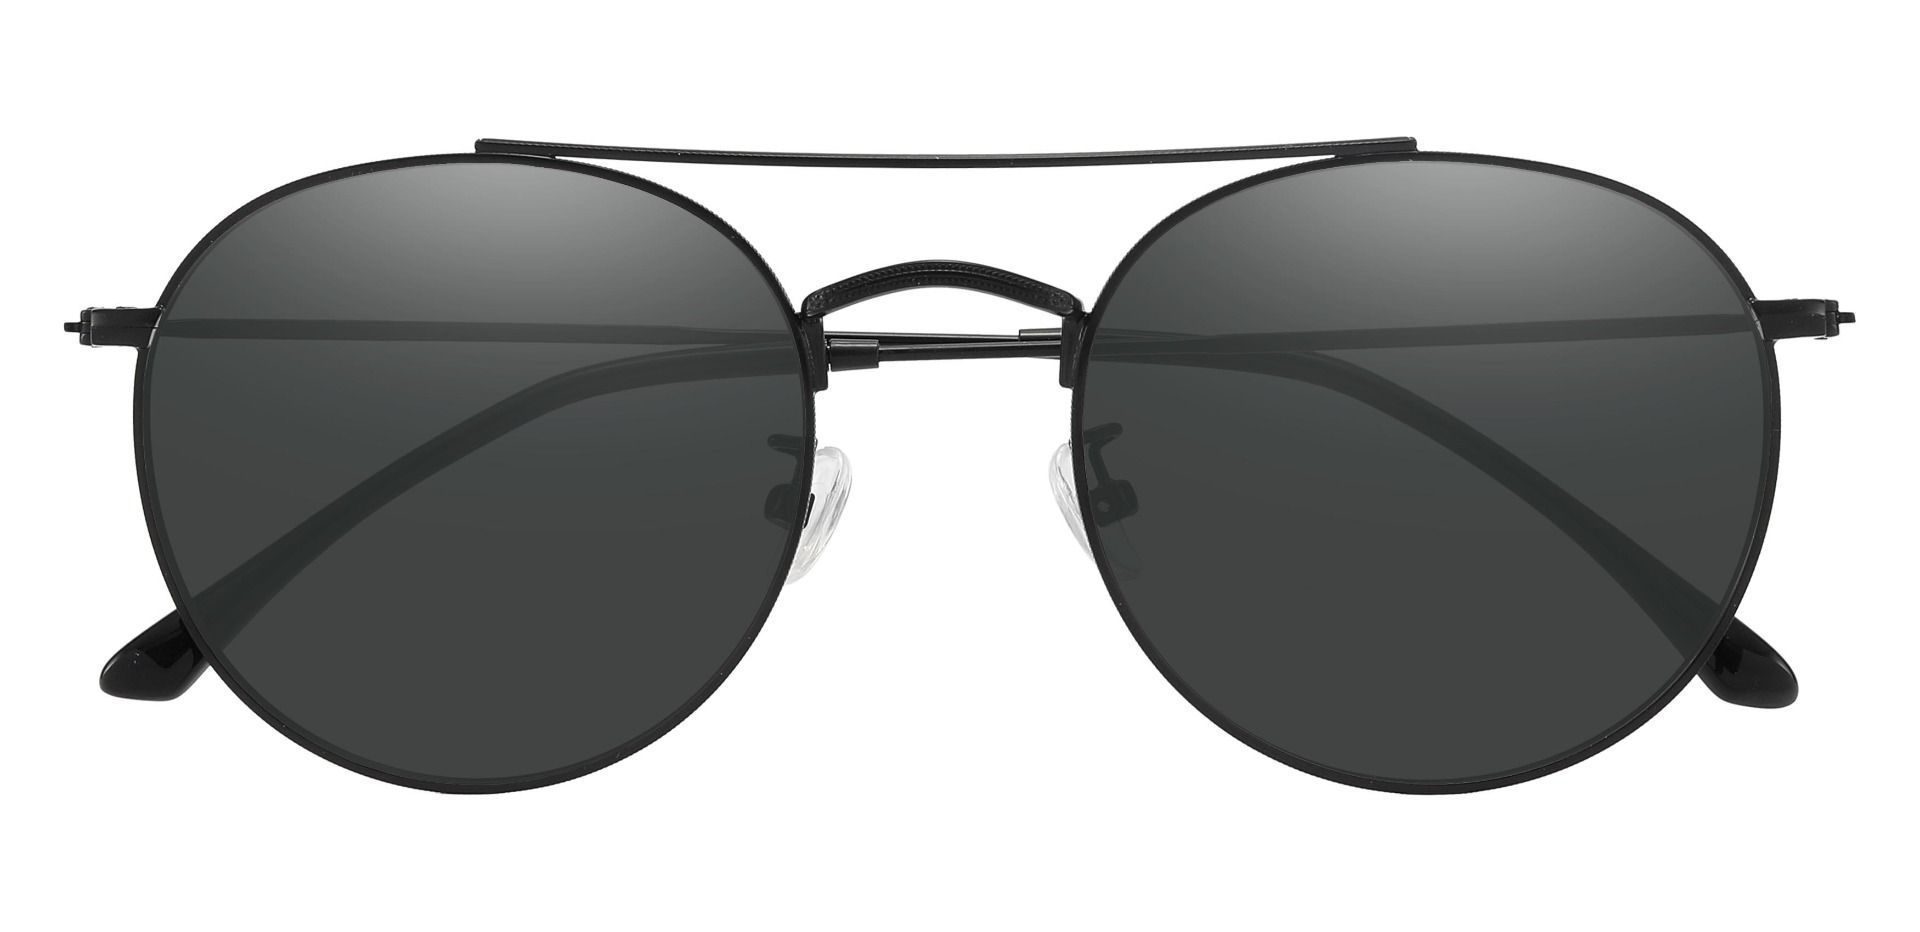 Junction Aviator Lined Bifocal Sunglasses - Black Frame With Gray Lenses